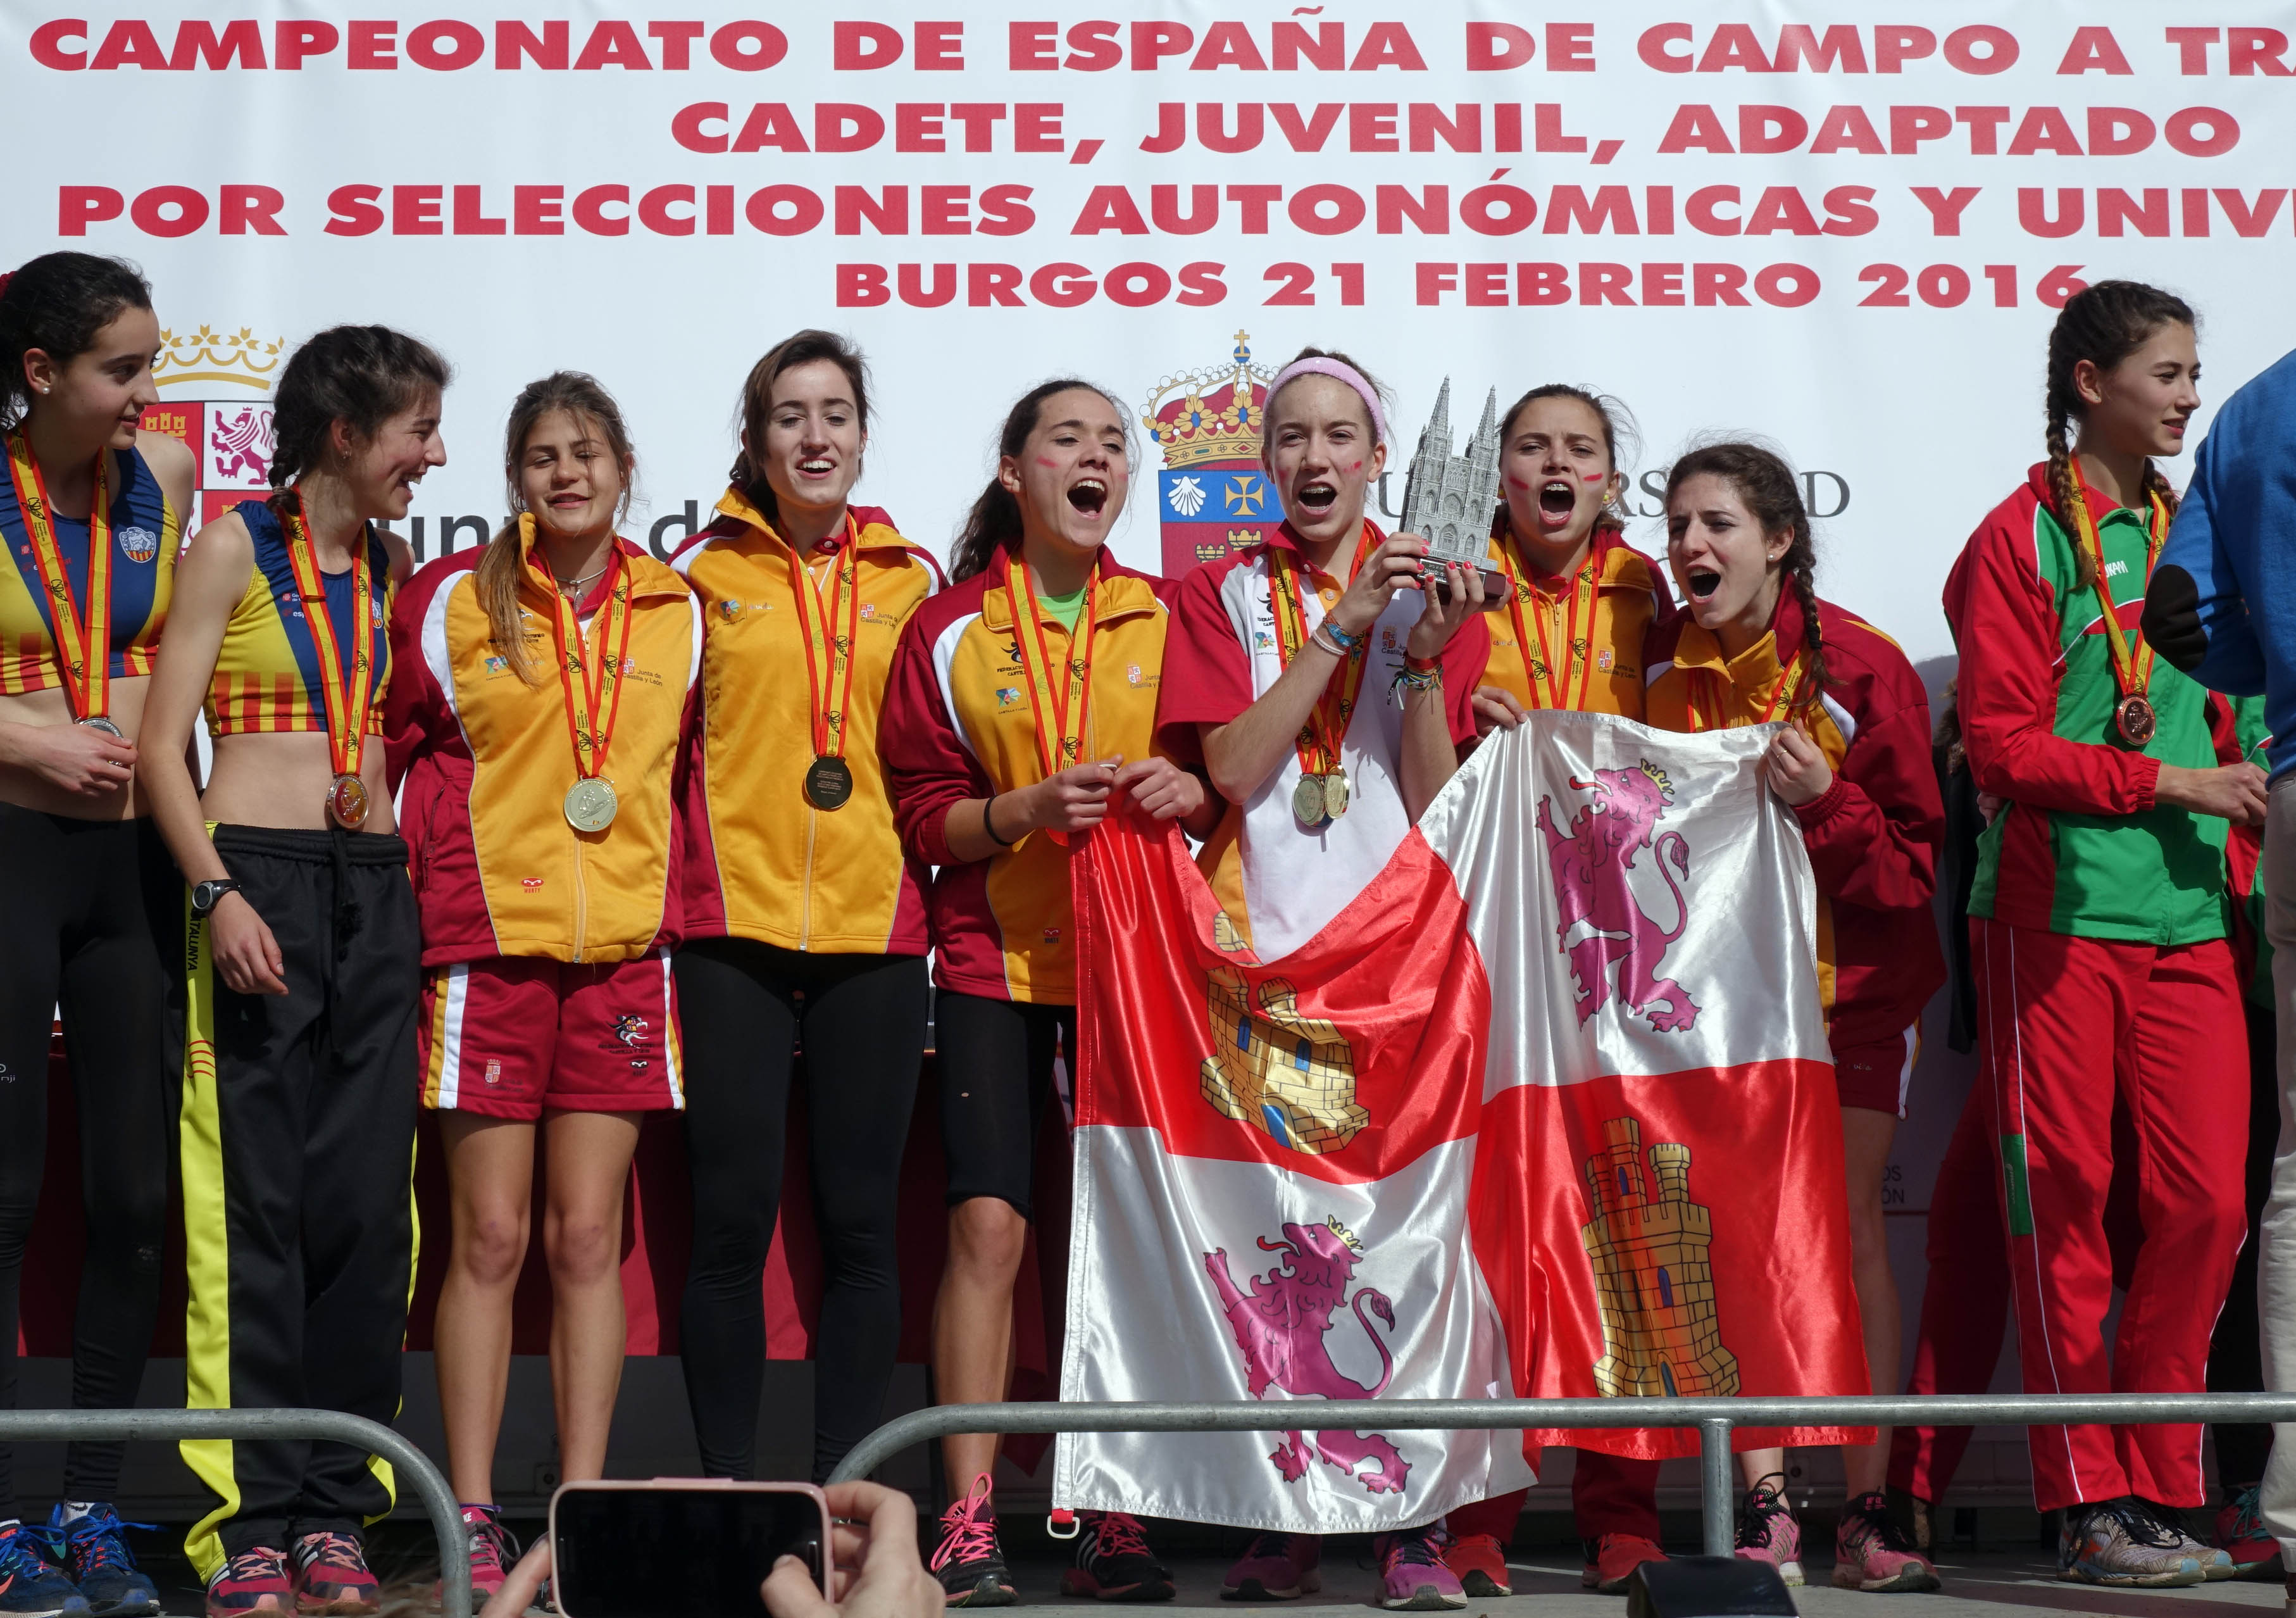 Águeda Muñoz Marqués, Campeona de España de Cross con la Selección Autonómica de Castilla y León